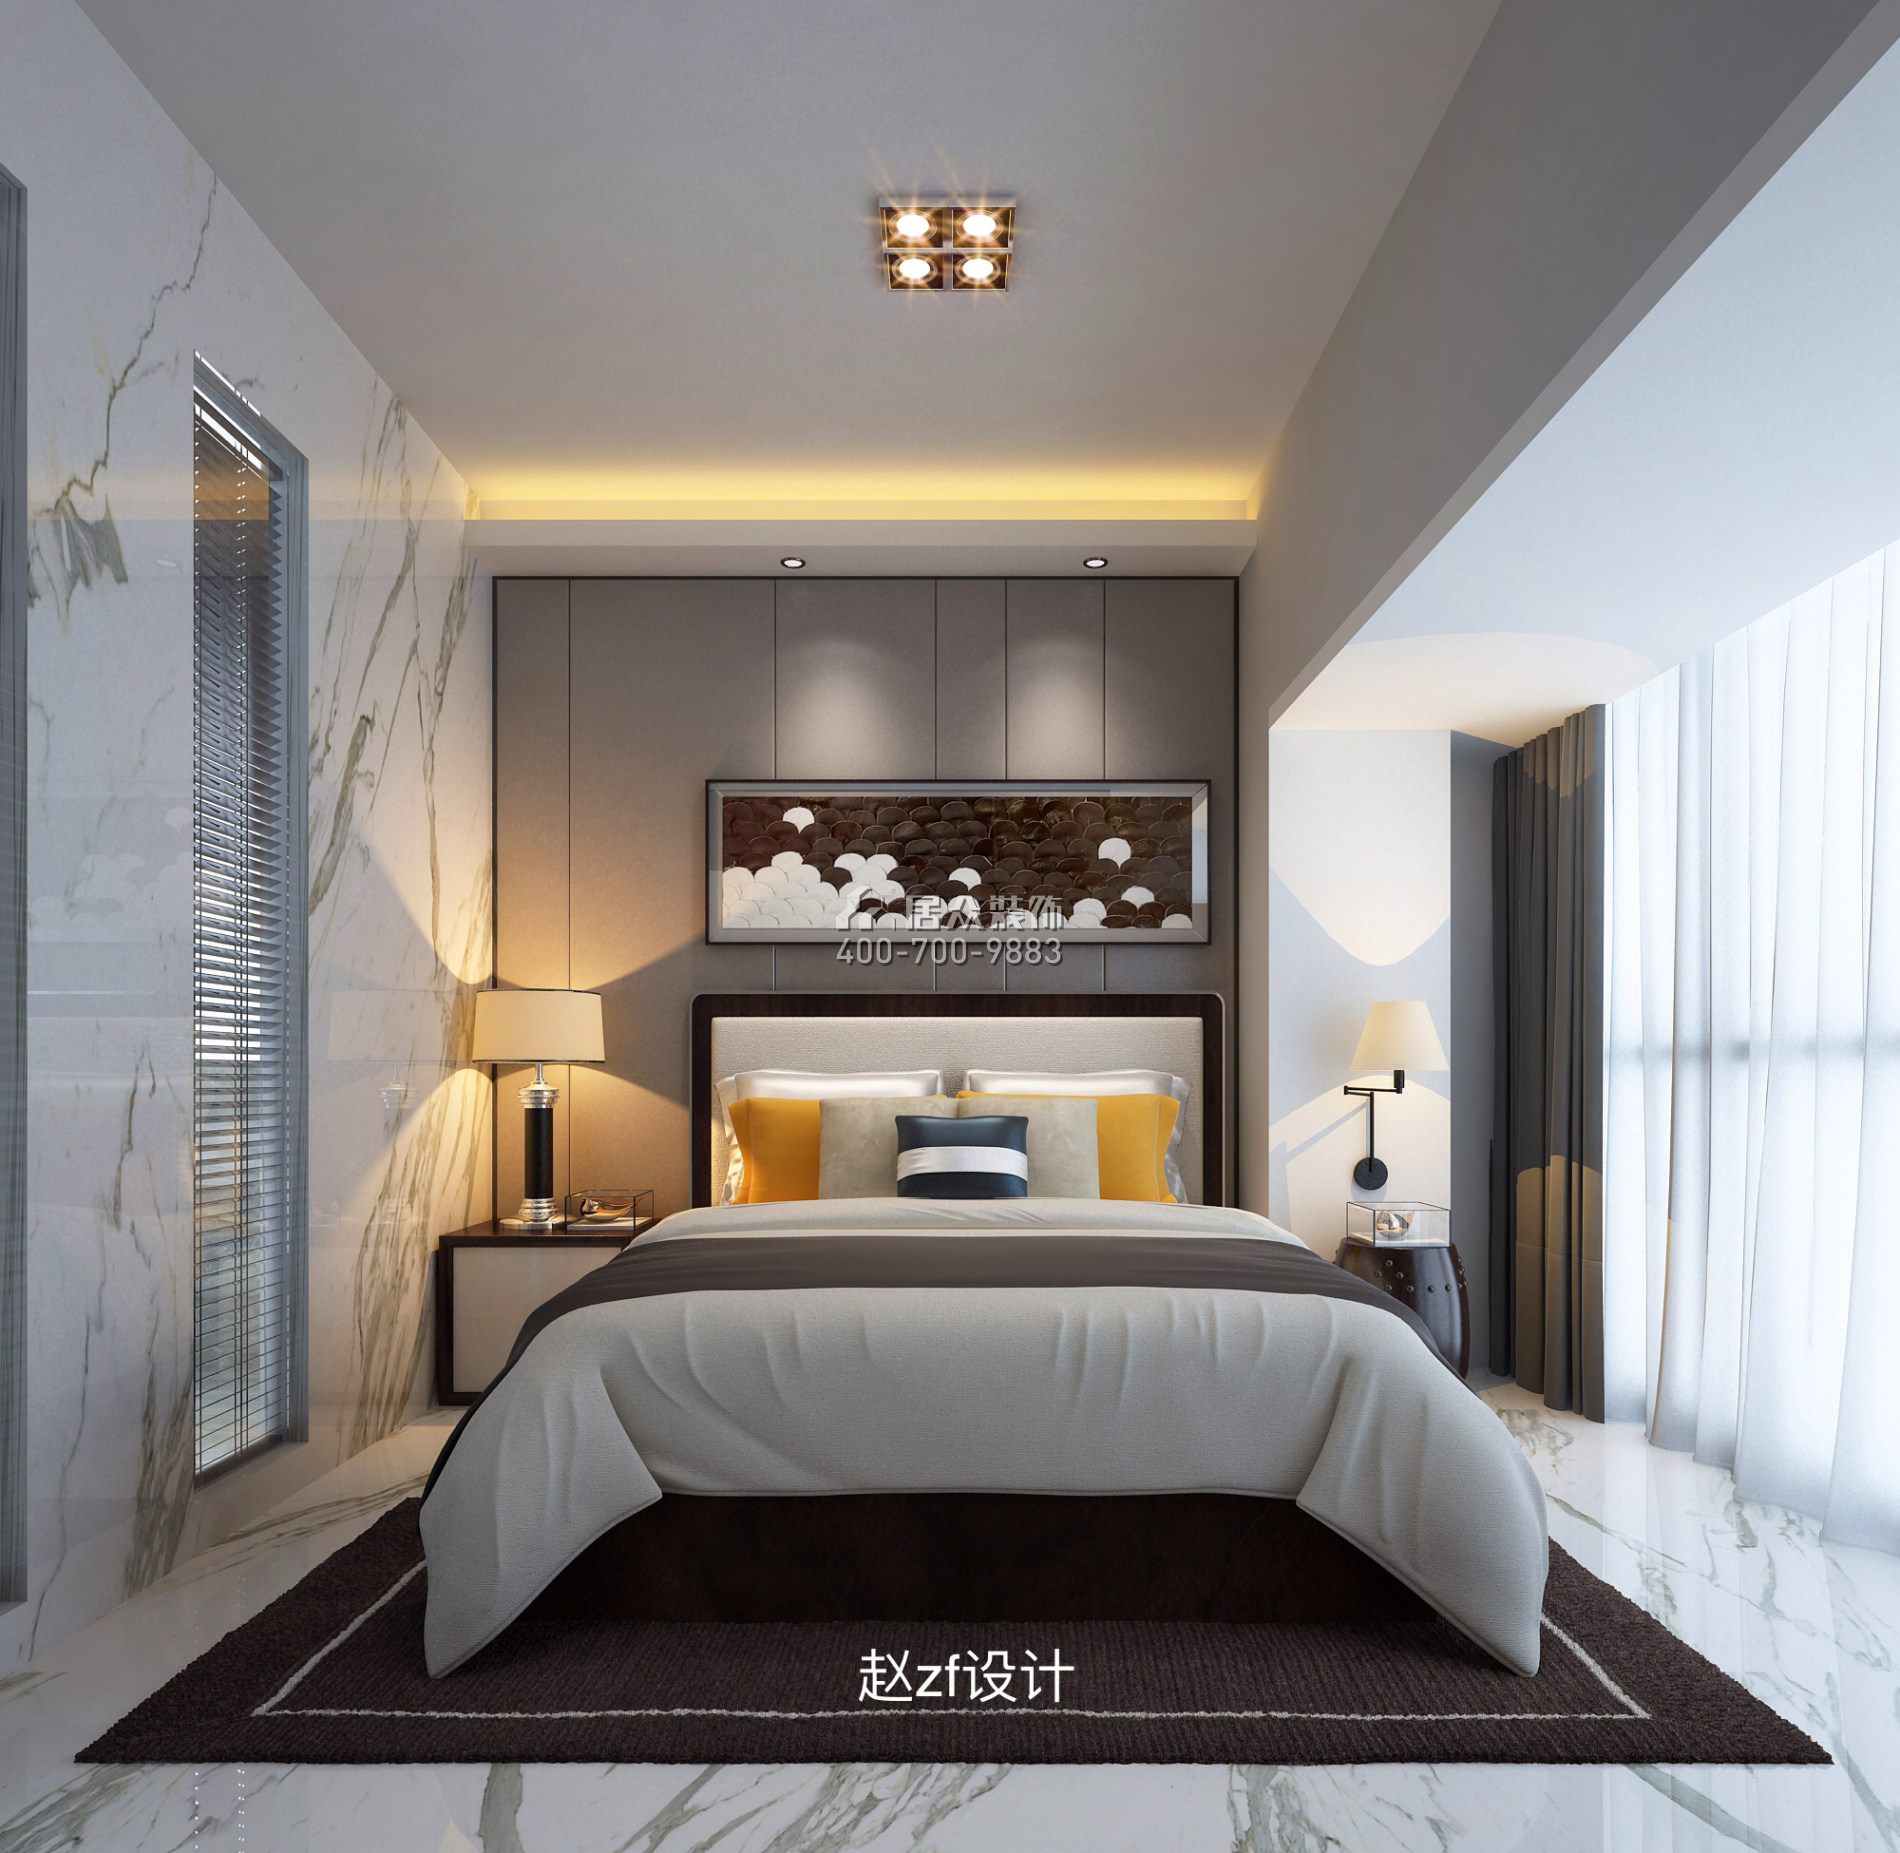 虹湾花园100平方米现代简约风格平层户型卧室装修效果图